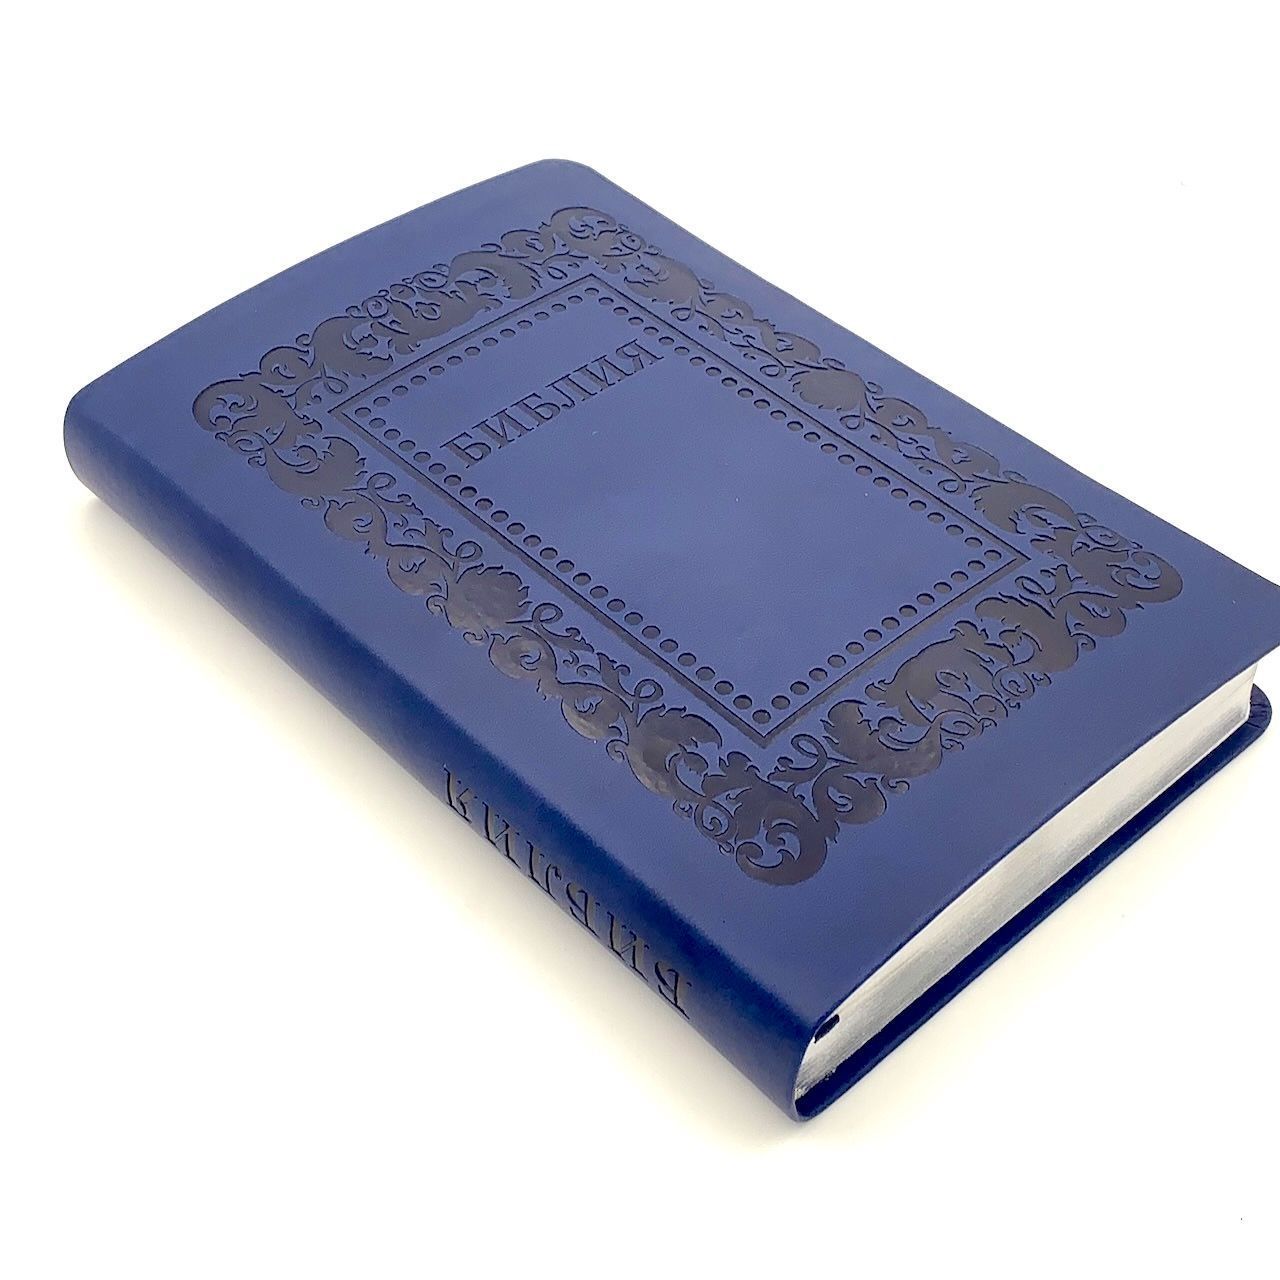 Библия 055 код F3 дизайн "термо рамка барокко", переплет из искусственной кожи, цвет темно-синий матовый, 140*215 мм